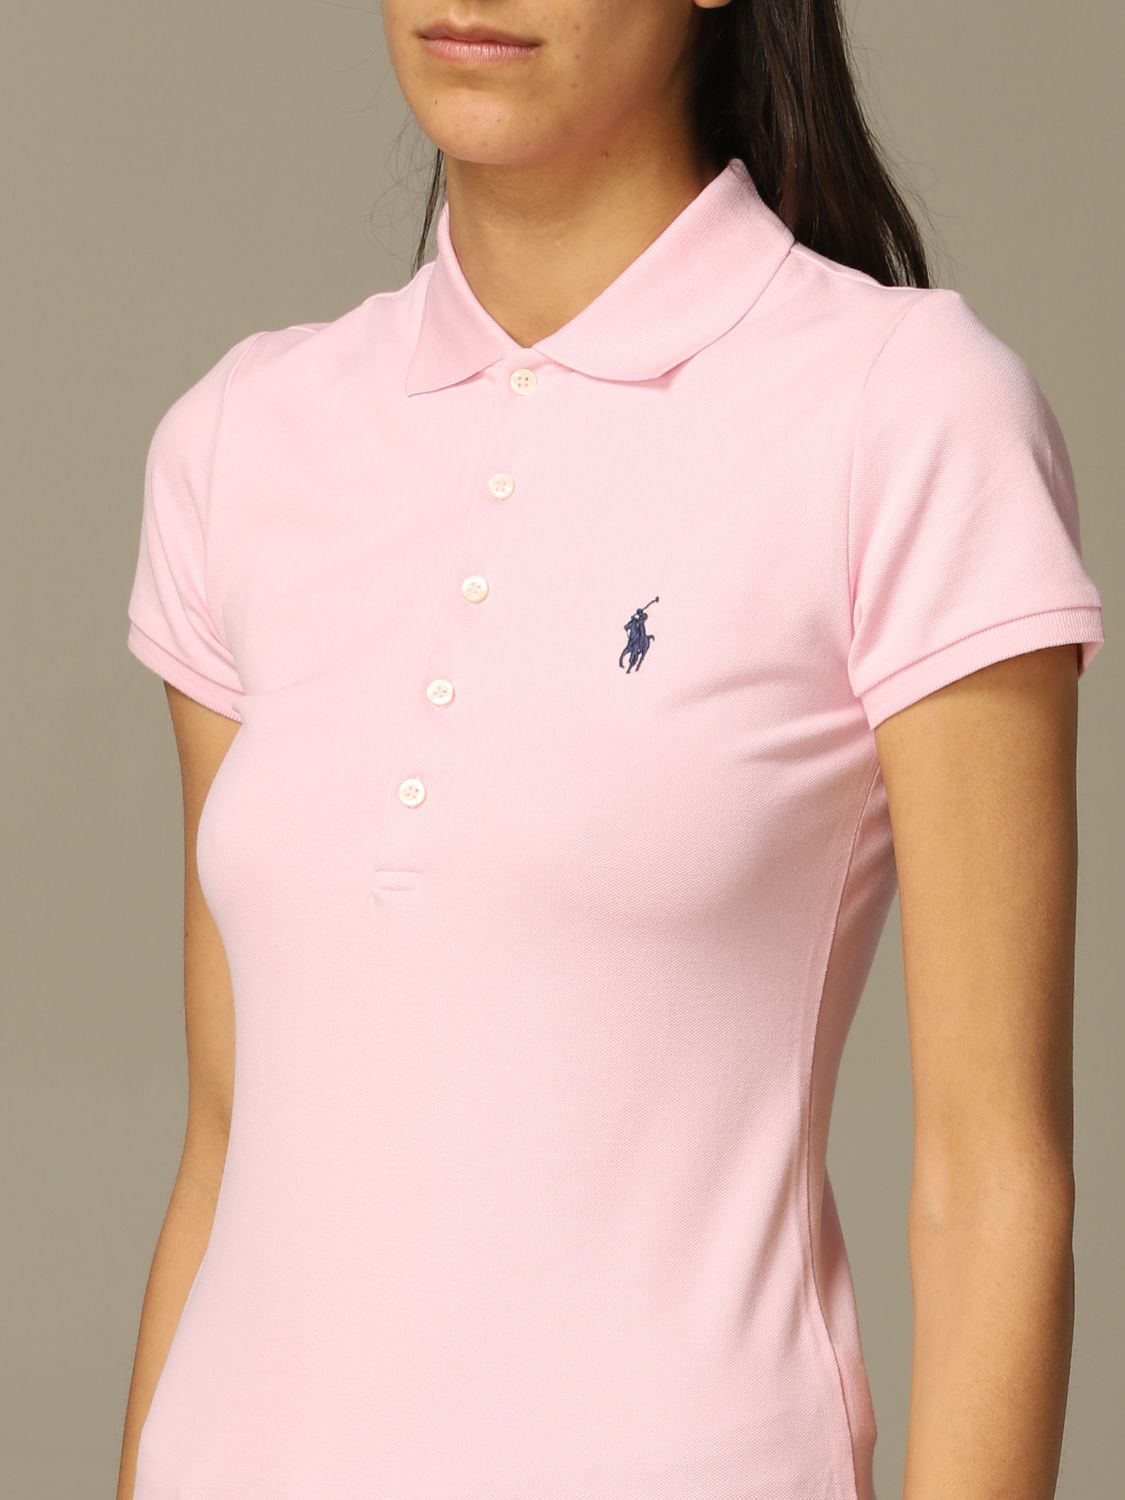 POLO RALPH LAUREN: T-shirt women | Polo Shirt Polo Ralph Lauren Women ...